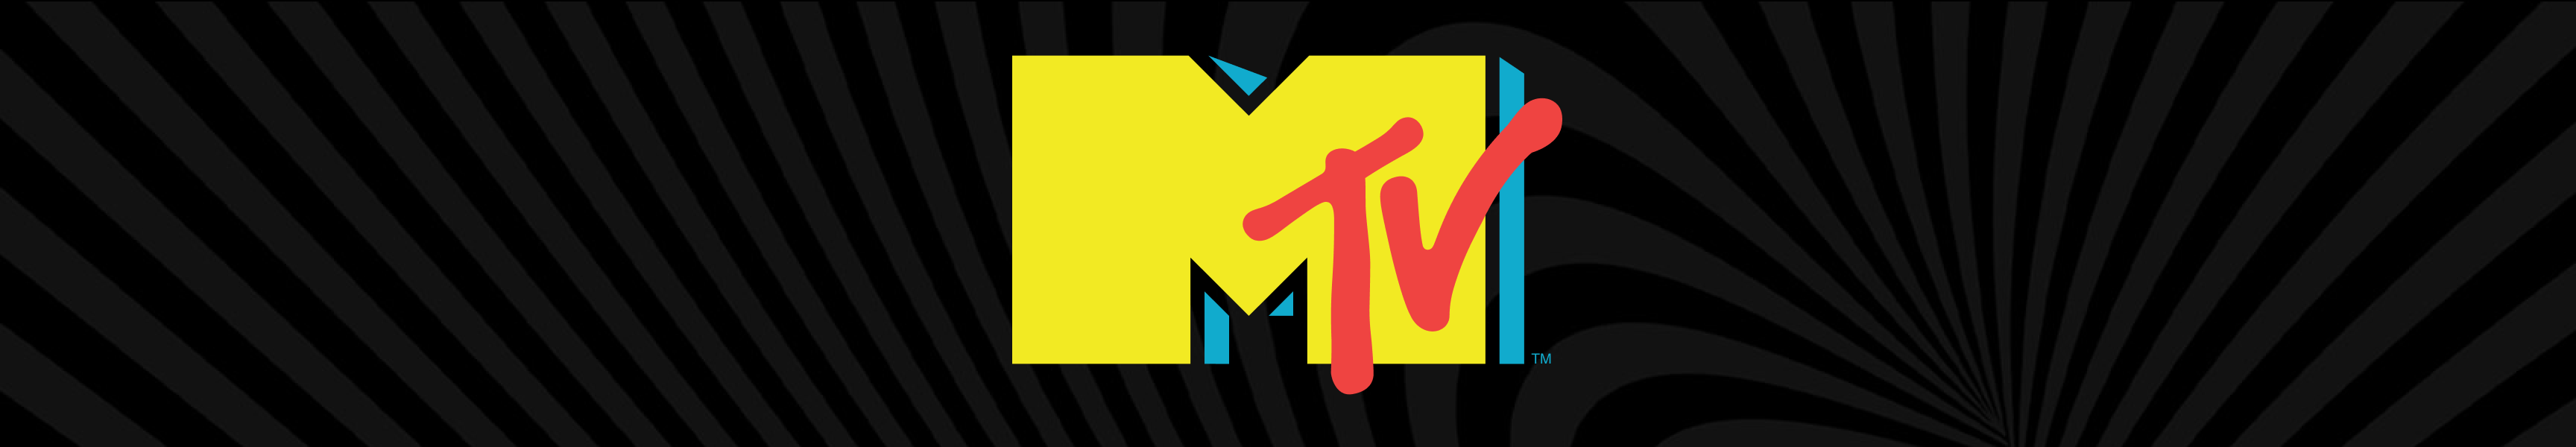 Venta de MTV